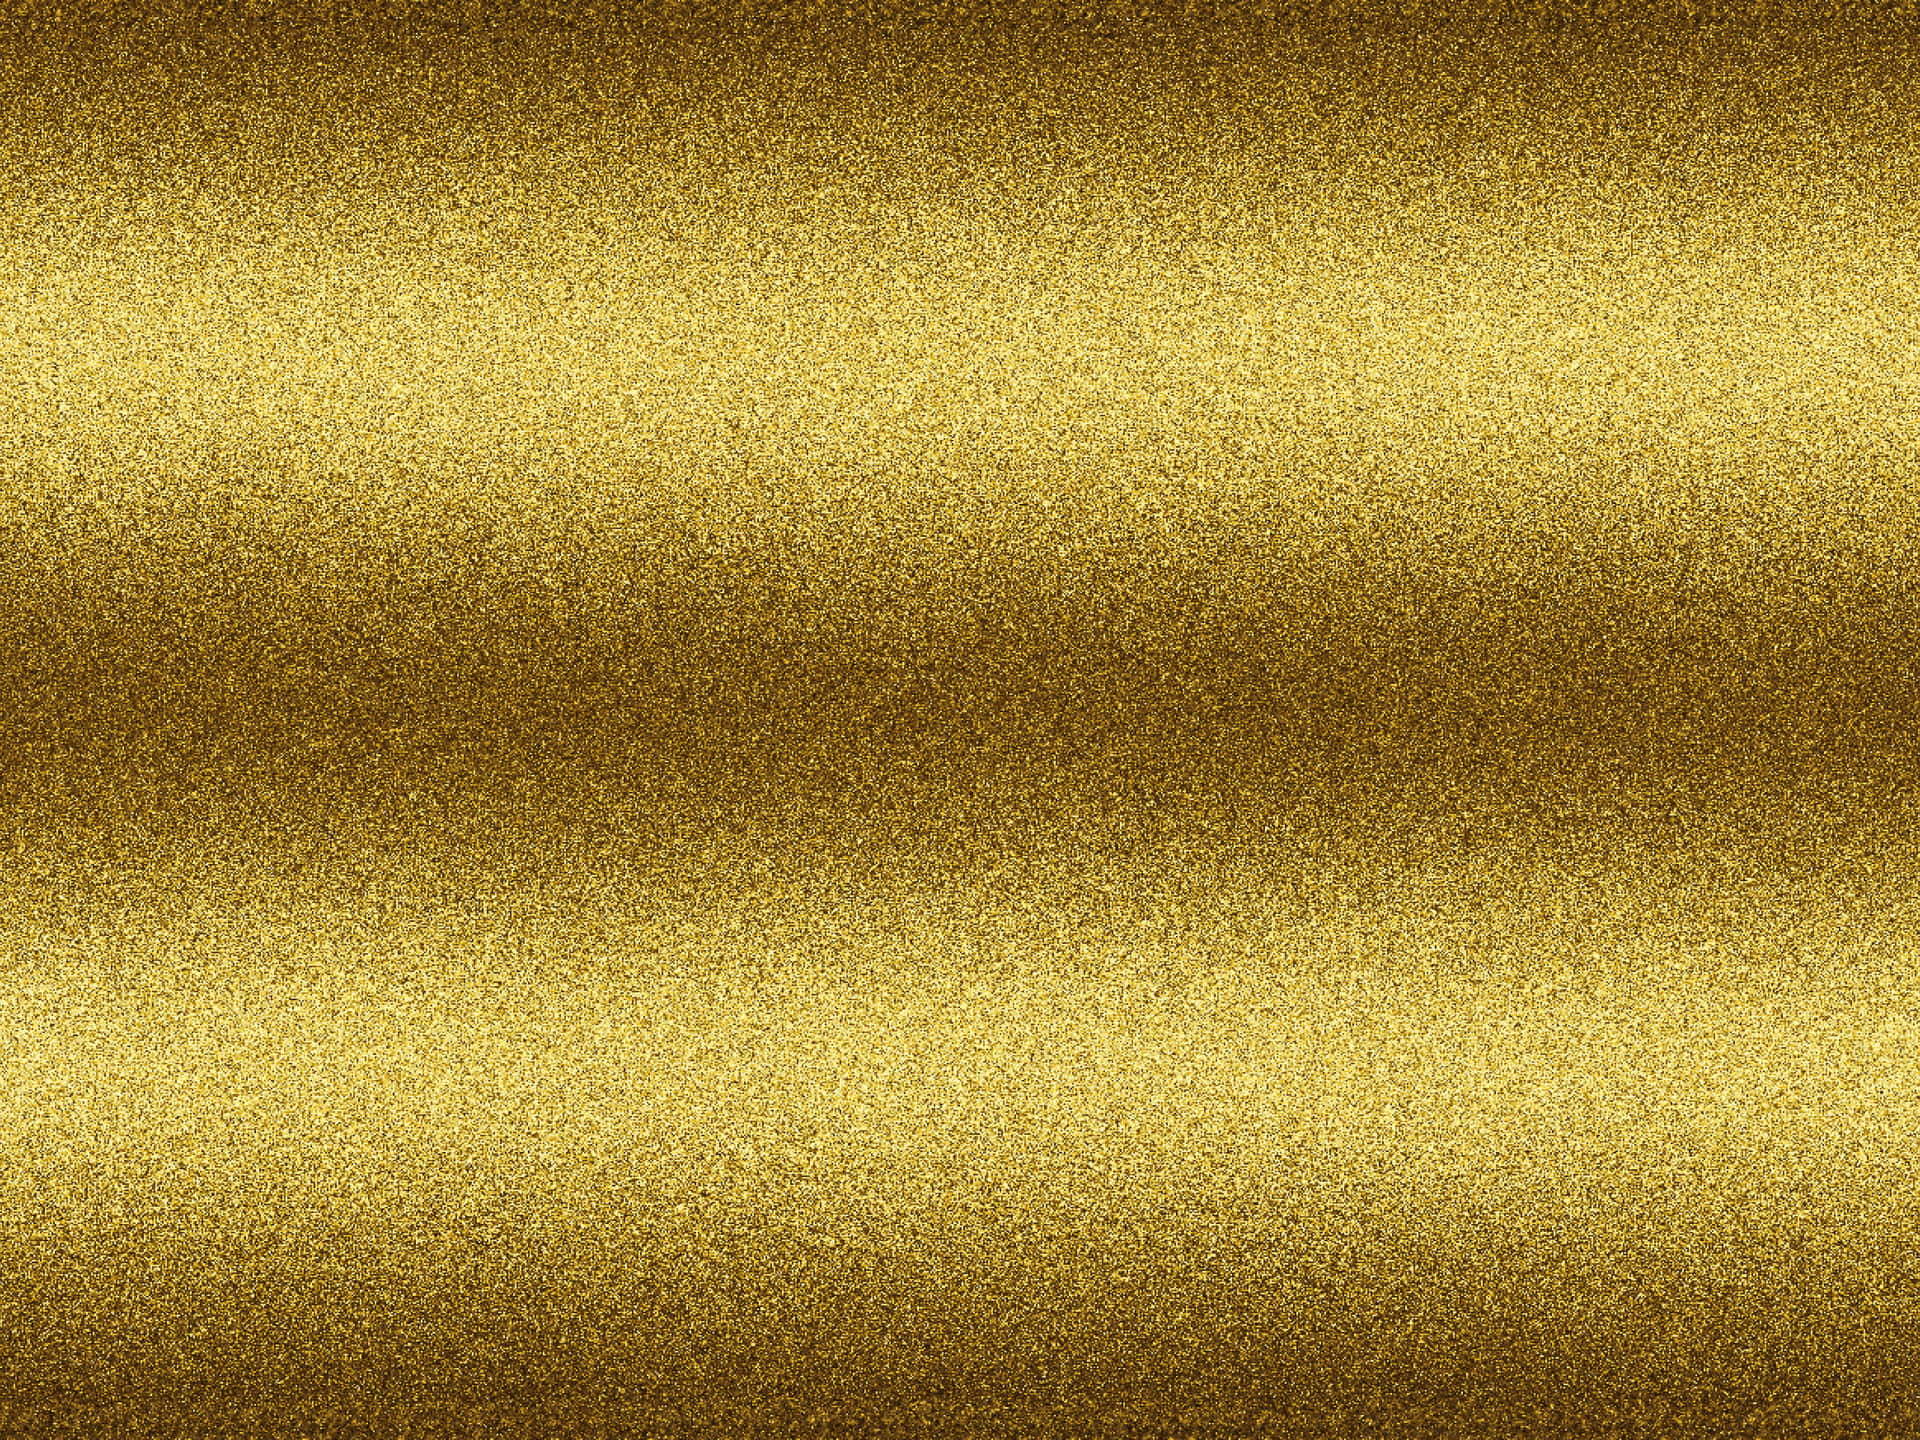 Et billede af et metallic guld overflade med små stjerner spredt på det Wallpaper